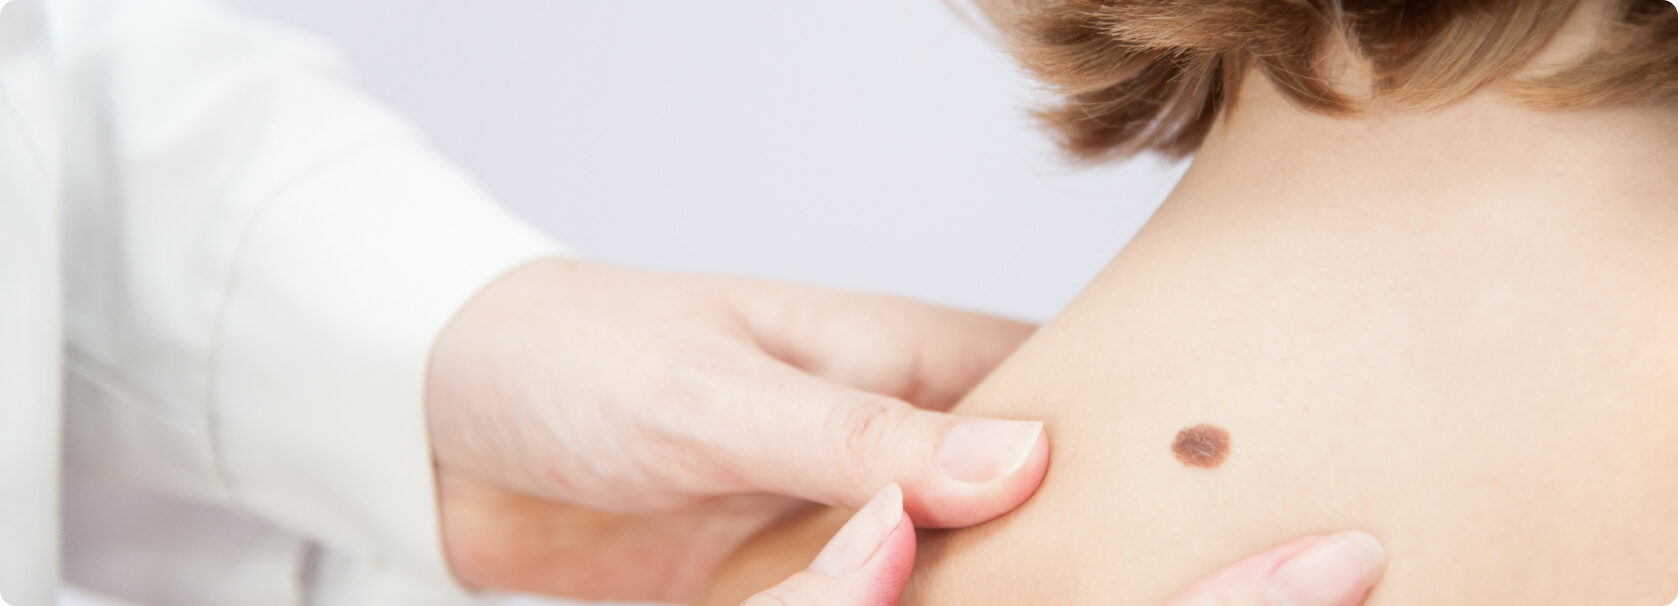 Hautkrebsvorsorge (Muttermalkontrolle) - Welche Methoden der Hautkrebsvorsorge gibt es?